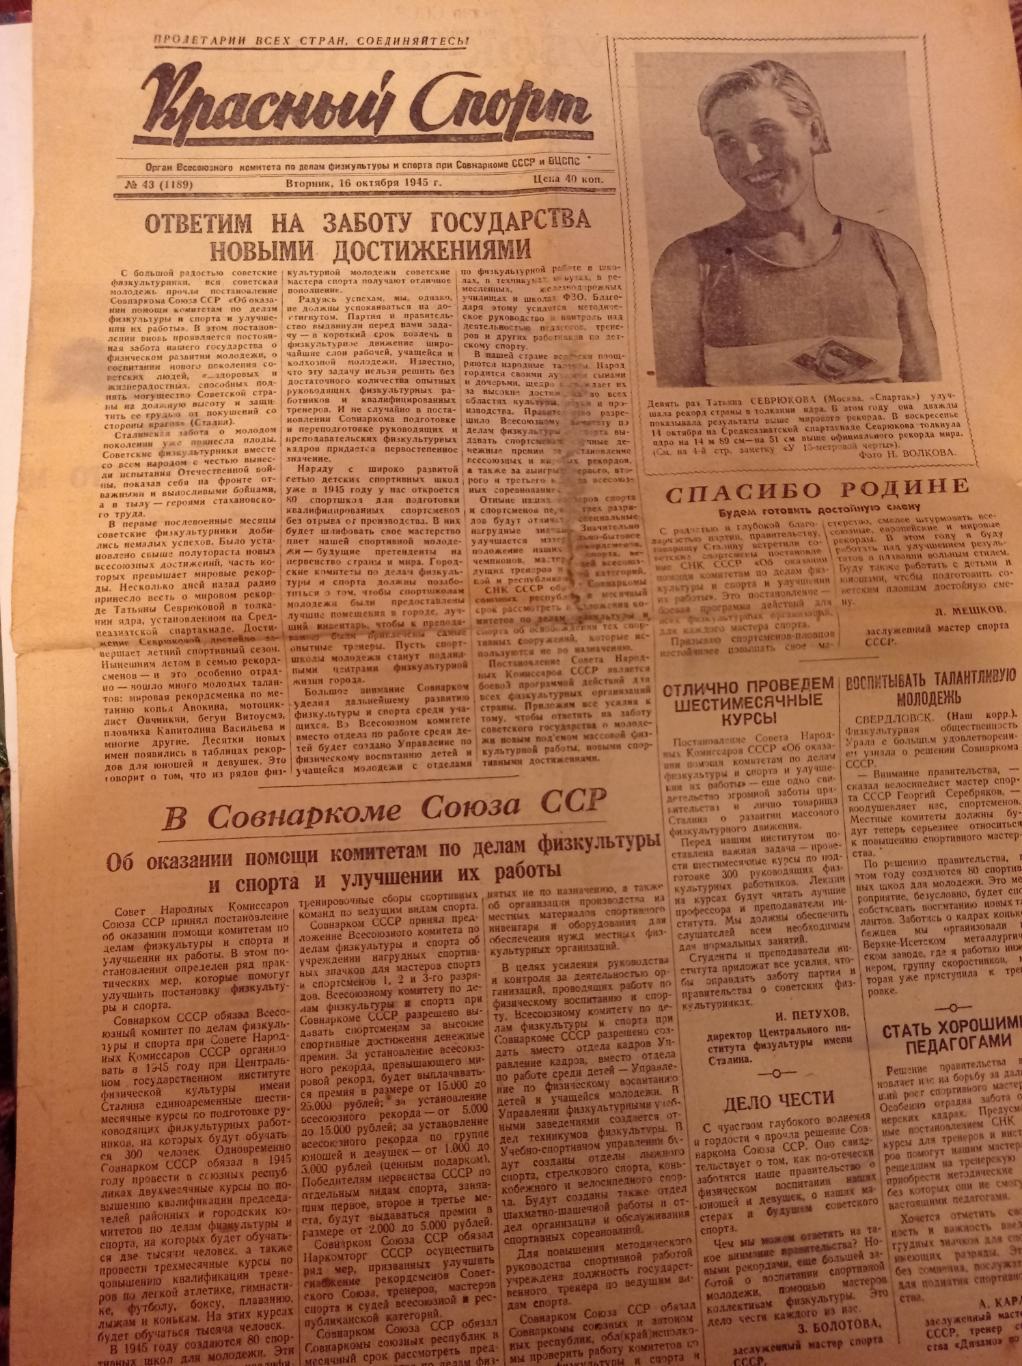 Газета Красный спорт 1945 Динамо - ЦДКА Кубок СССР